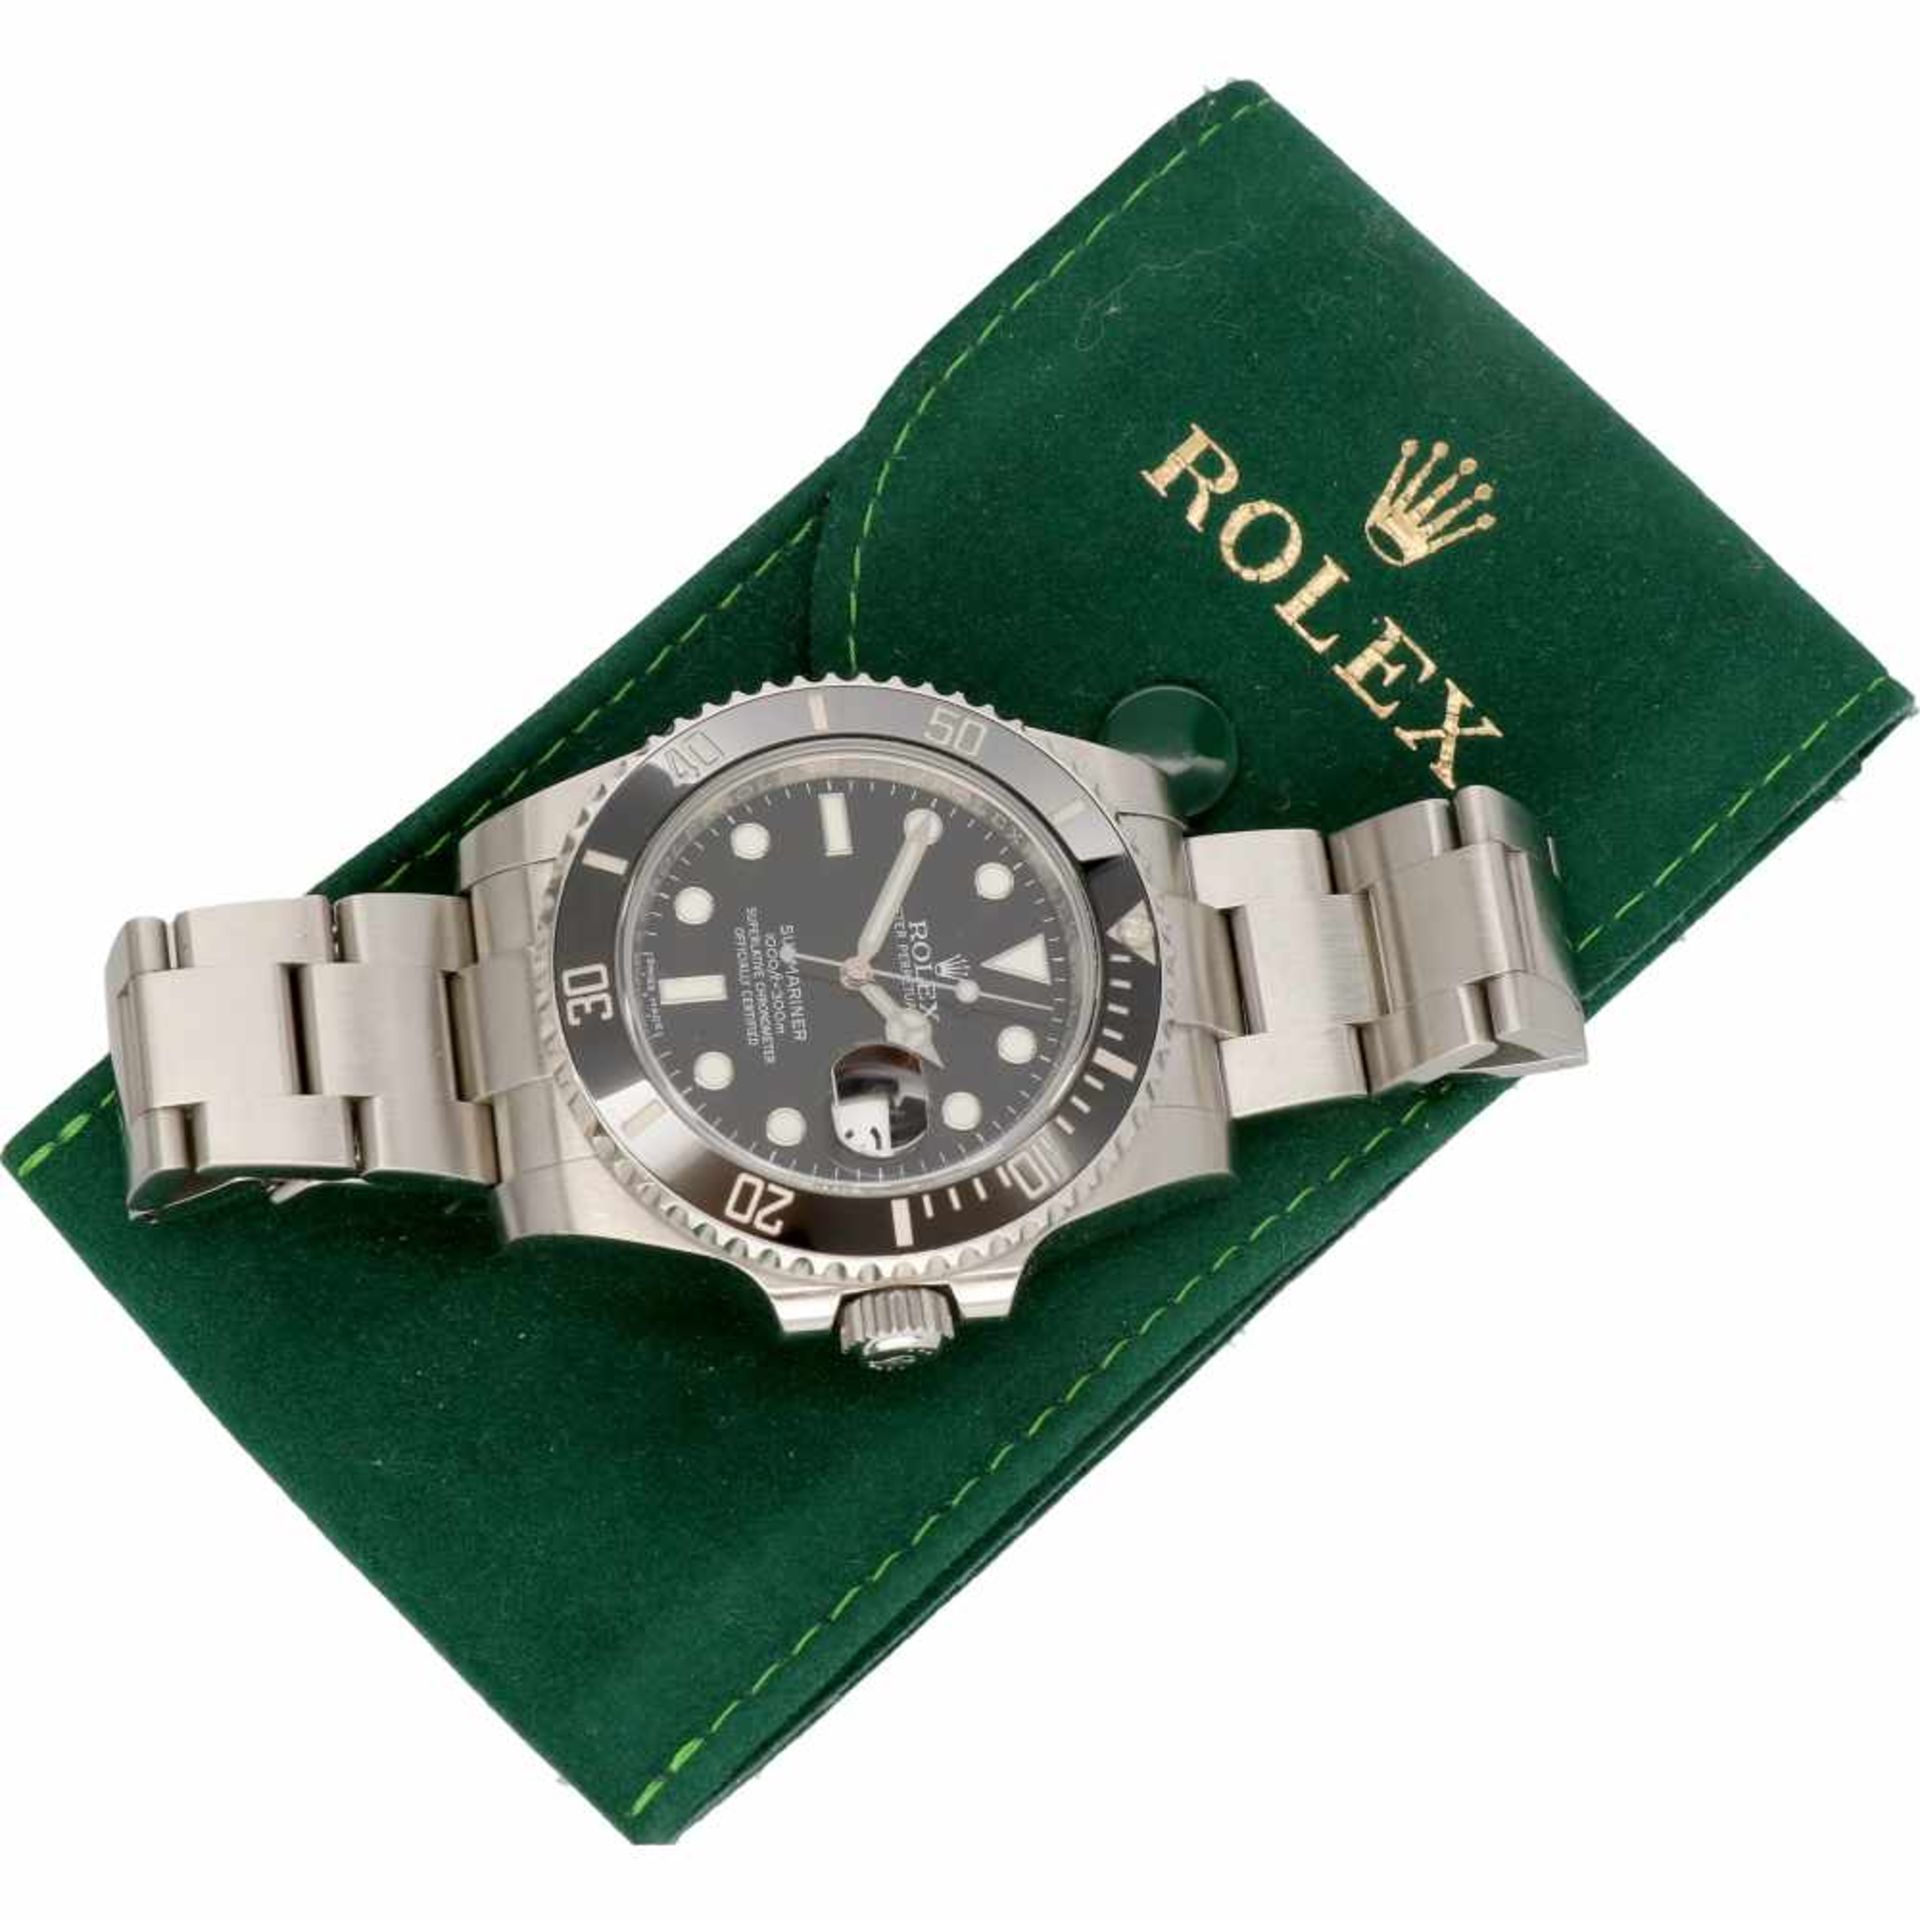 Rolex Submariner 116610 - Men's watch - Automatic - Ca. 2011. - Bild 6 aus 6